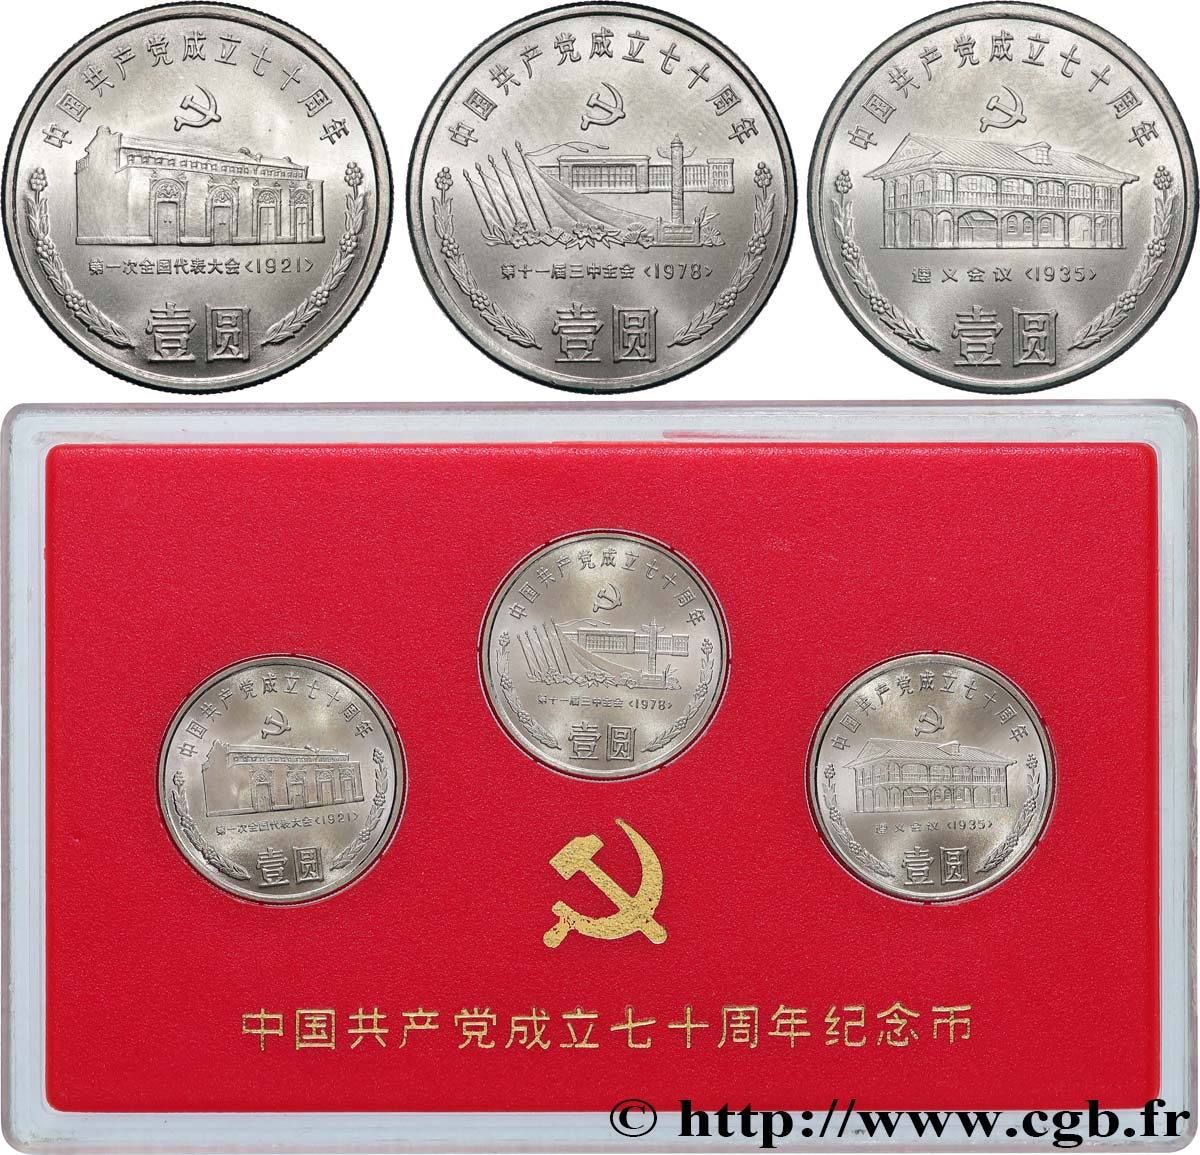 CHINA - REPÚBLICA POPULAR CHINA Coffret trois monnaies 70e anniversaire du Parti communiste chinois 1991  FDC 